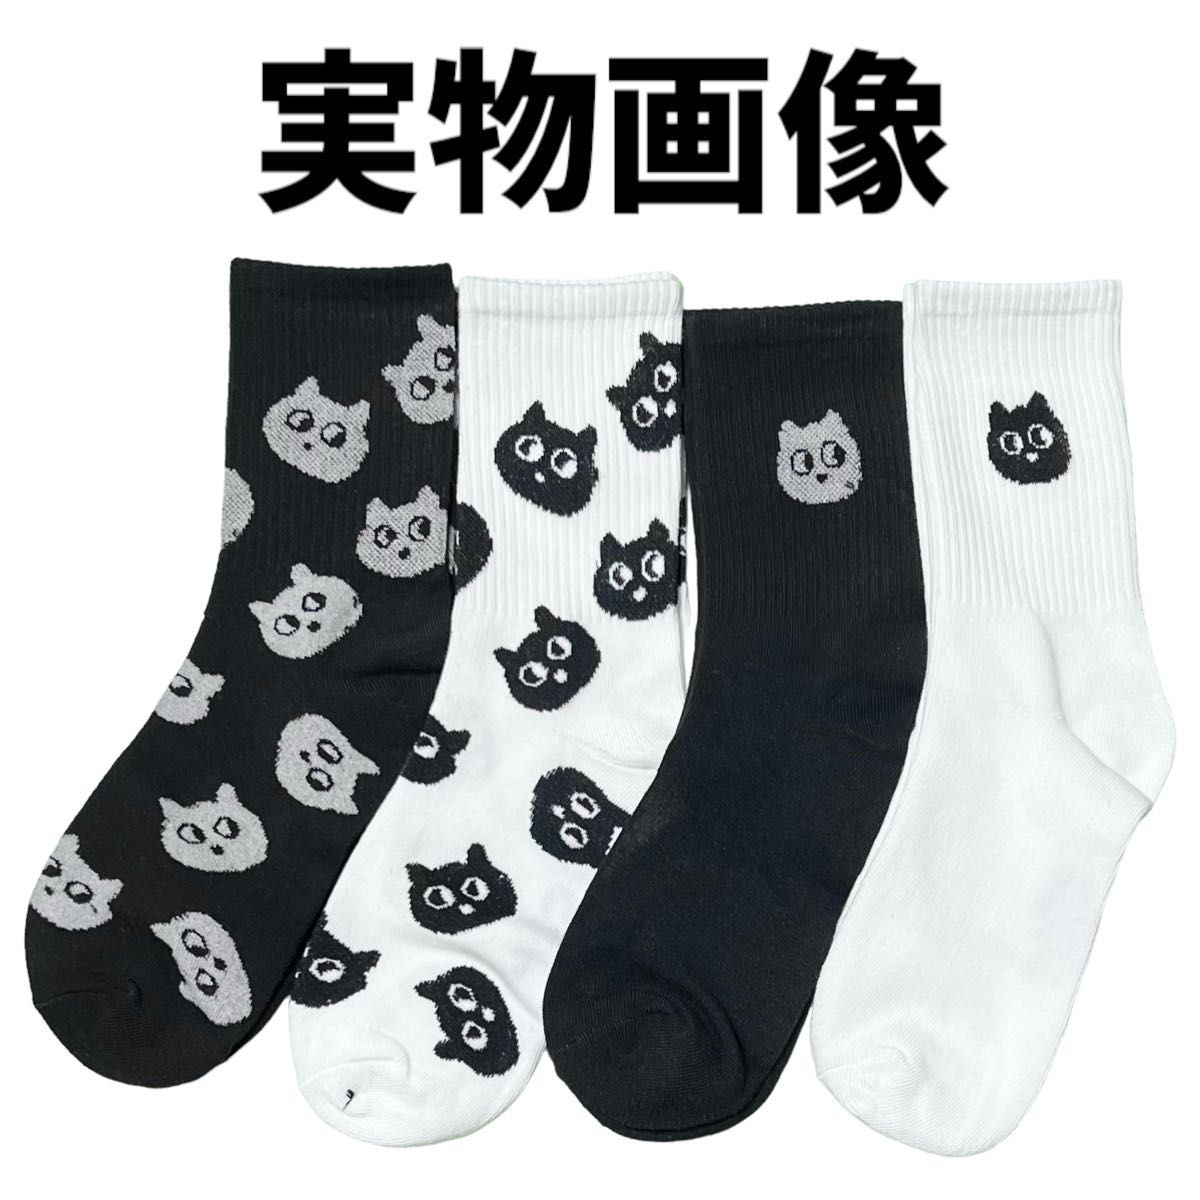 【海外輸入品】猫柄 ソックス 靴下 4足セット タイプE【新品未使用】